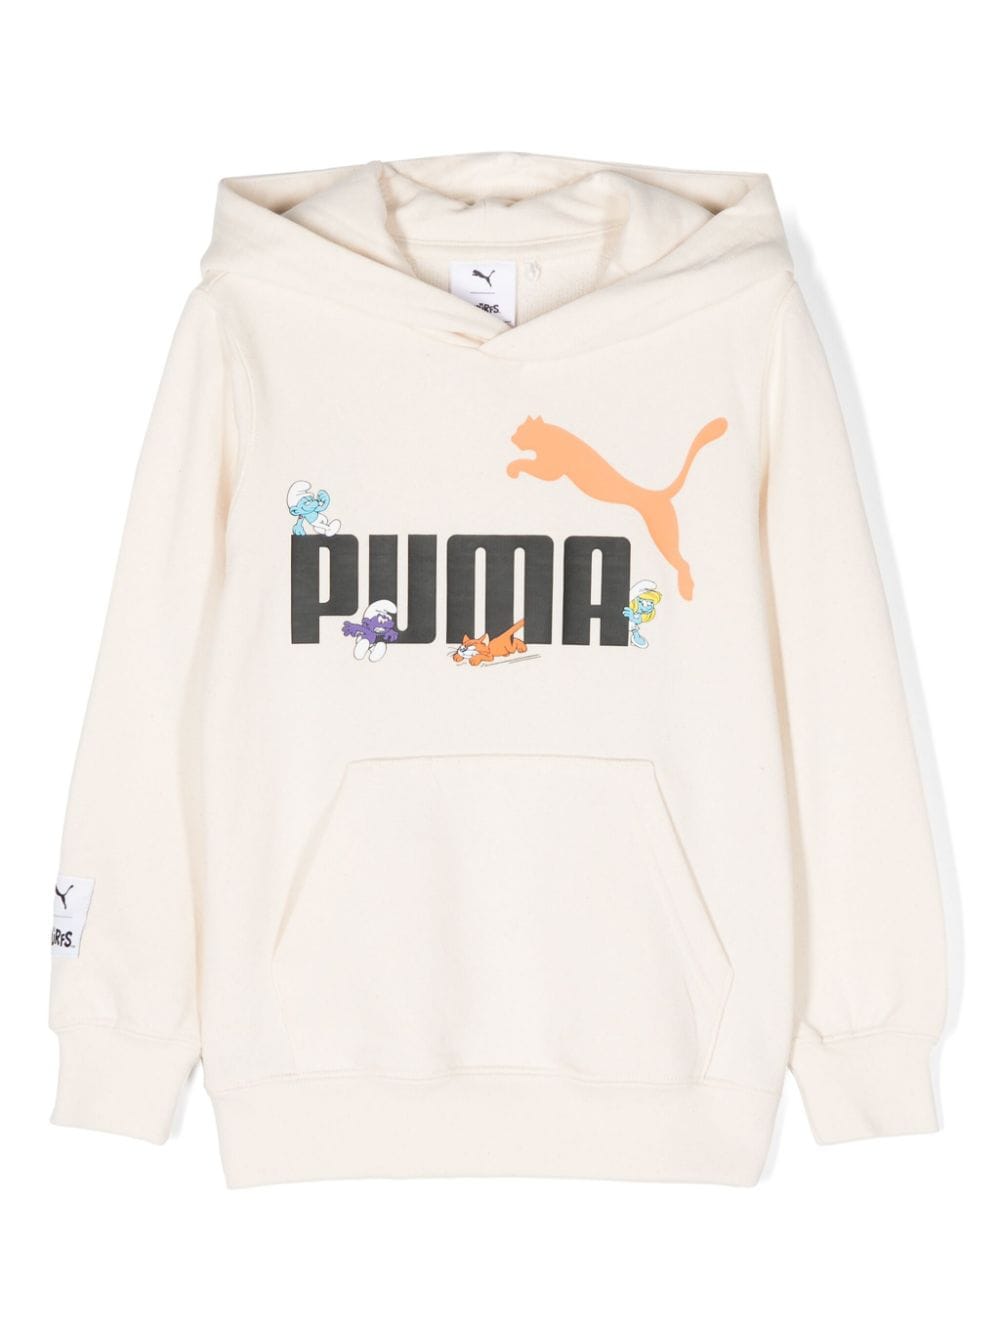 Puma Kids x The Smurfs cotton hoodie - Neutrals von Puma Kids